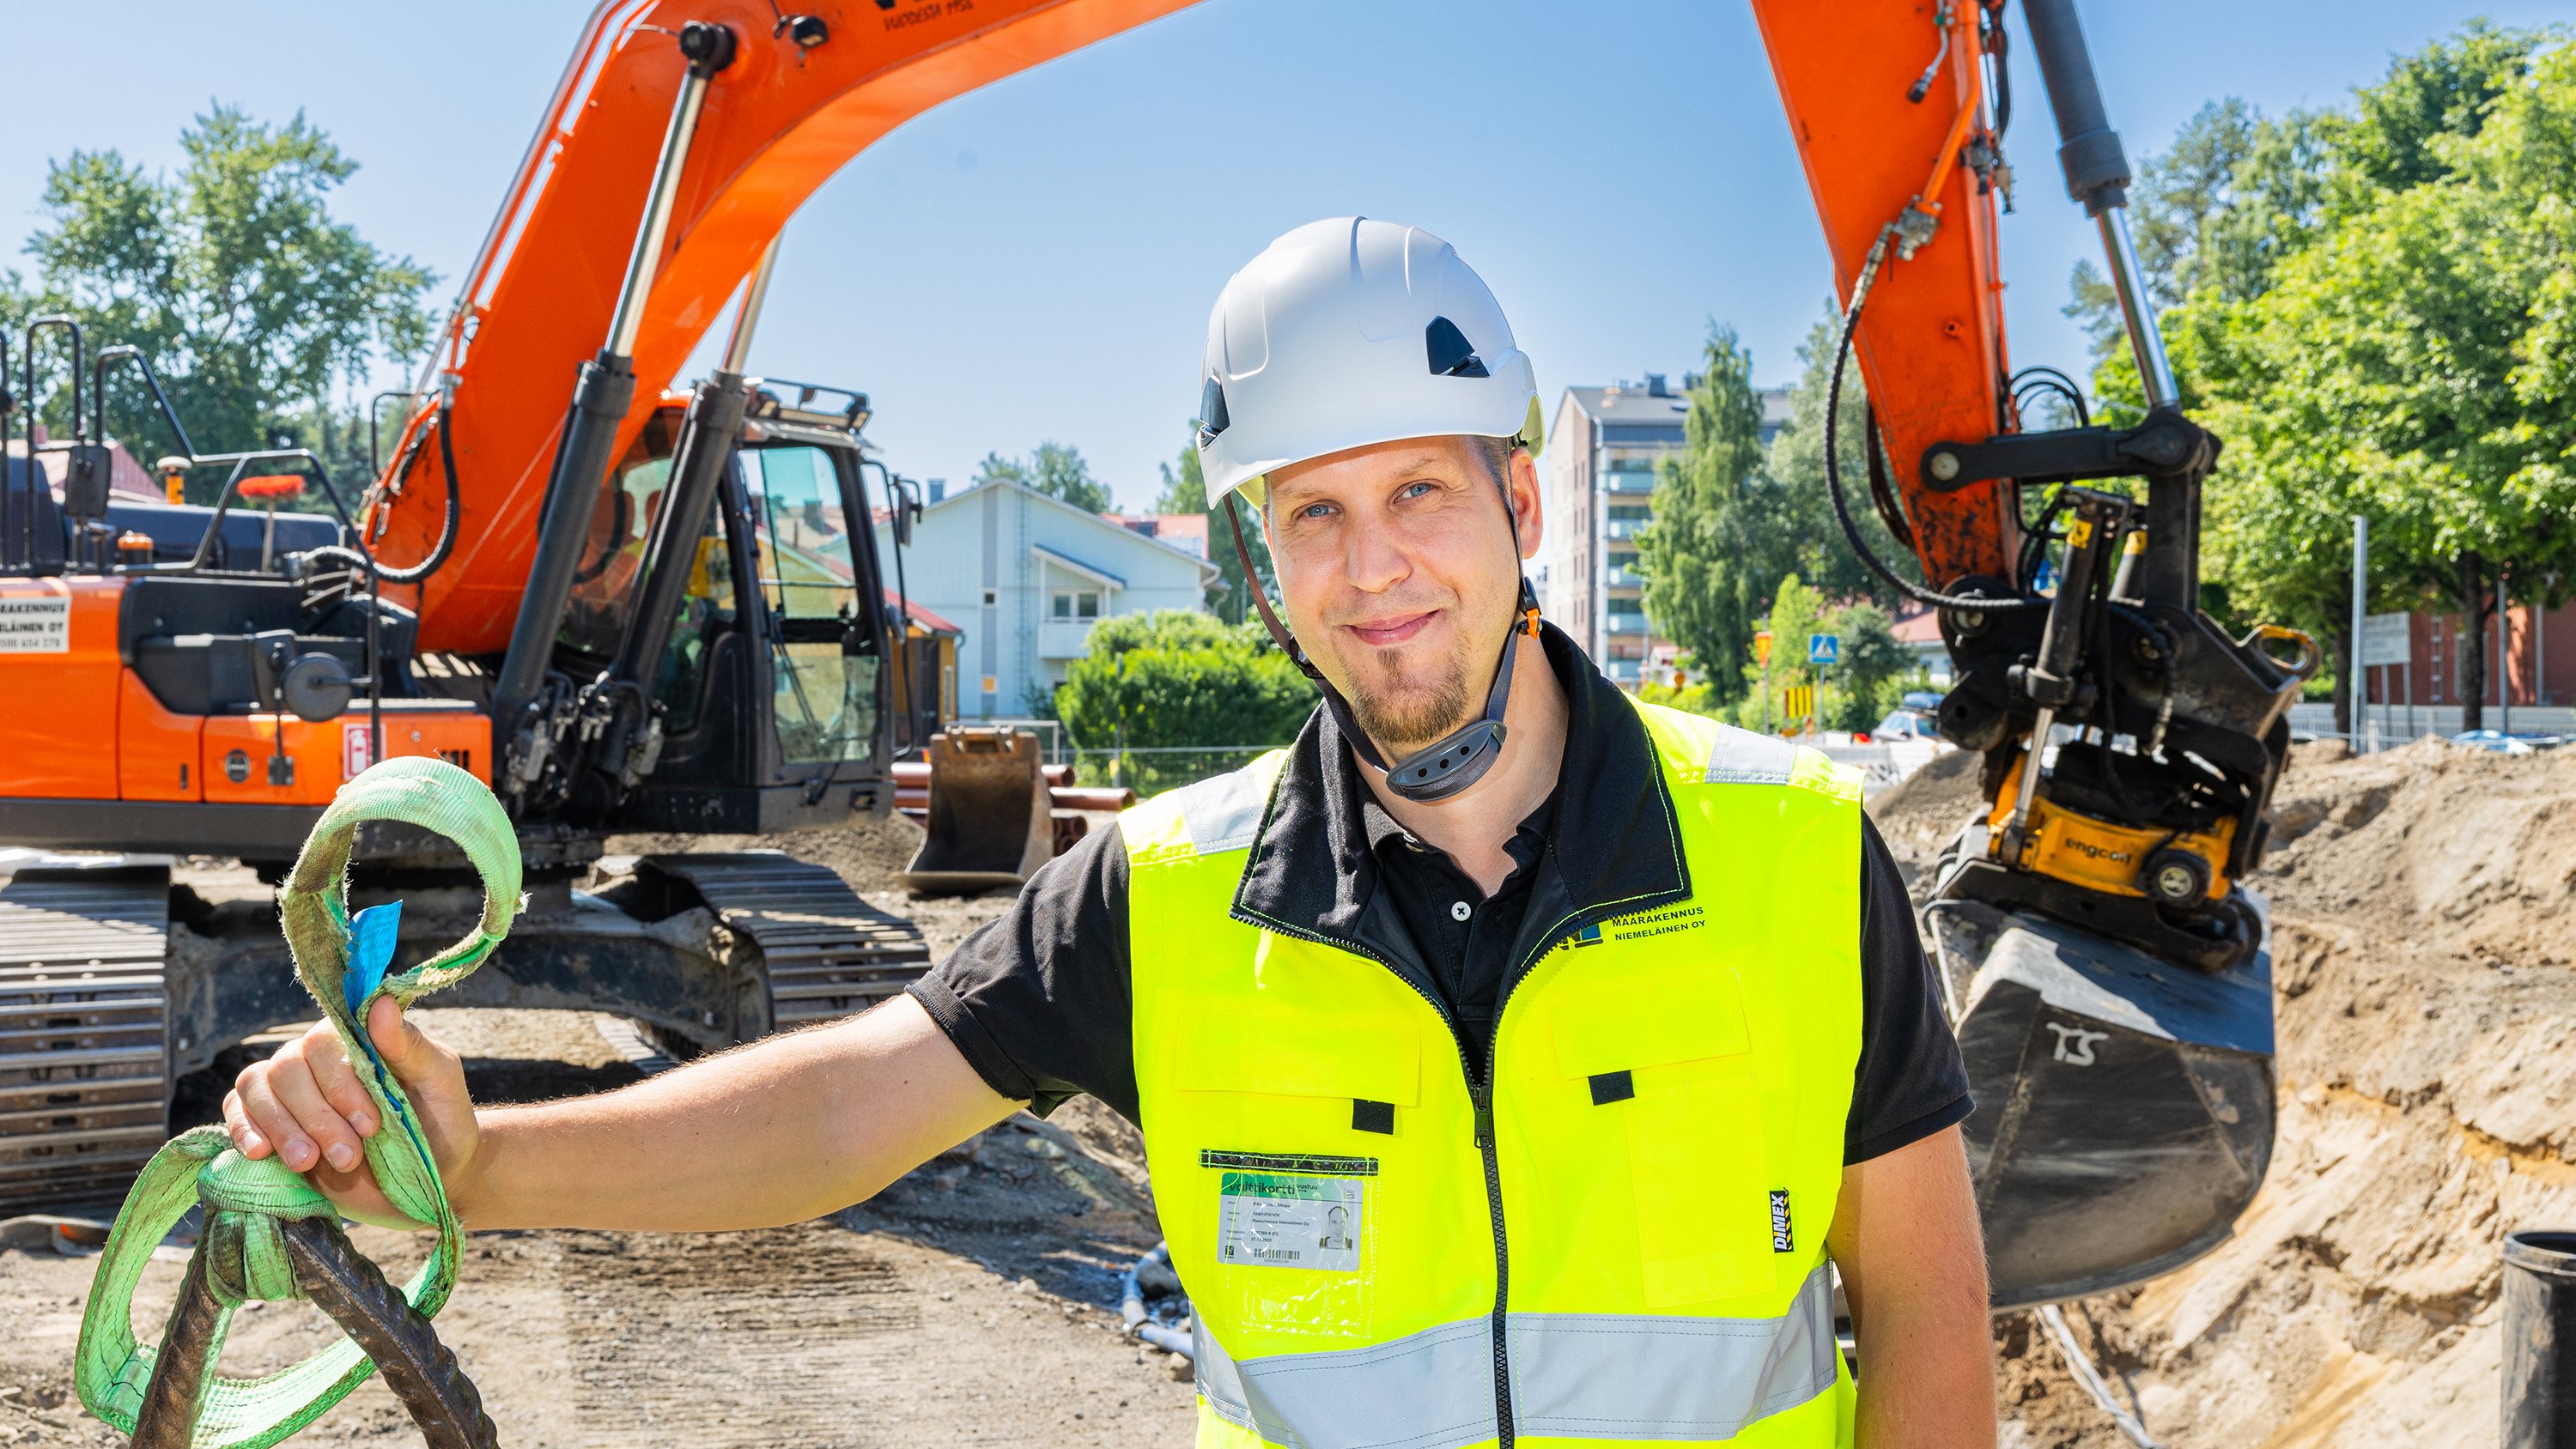 Maarakennus Niemeläinen, Riku Alitupa | Business Joensuu business services | A man with a helmet standing on a street onstruction site